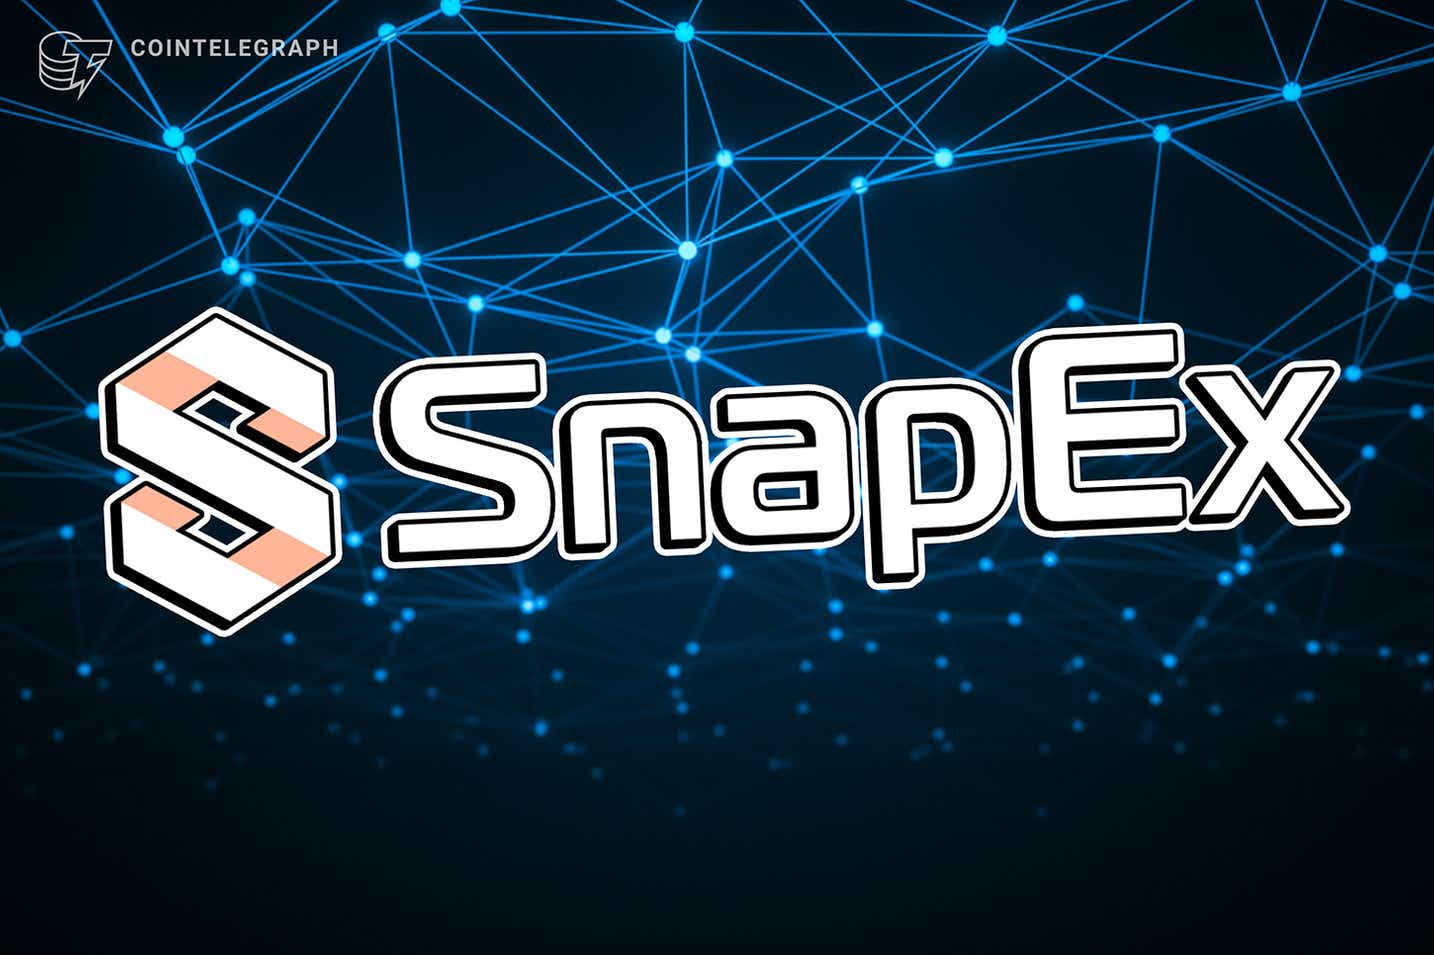 SnapEx chuẩn bị ra mắt mã thông báo nền tảng CFD tiền điện tử của mình, được hỗ trợ bởi hàng chục VC nổi tiếng